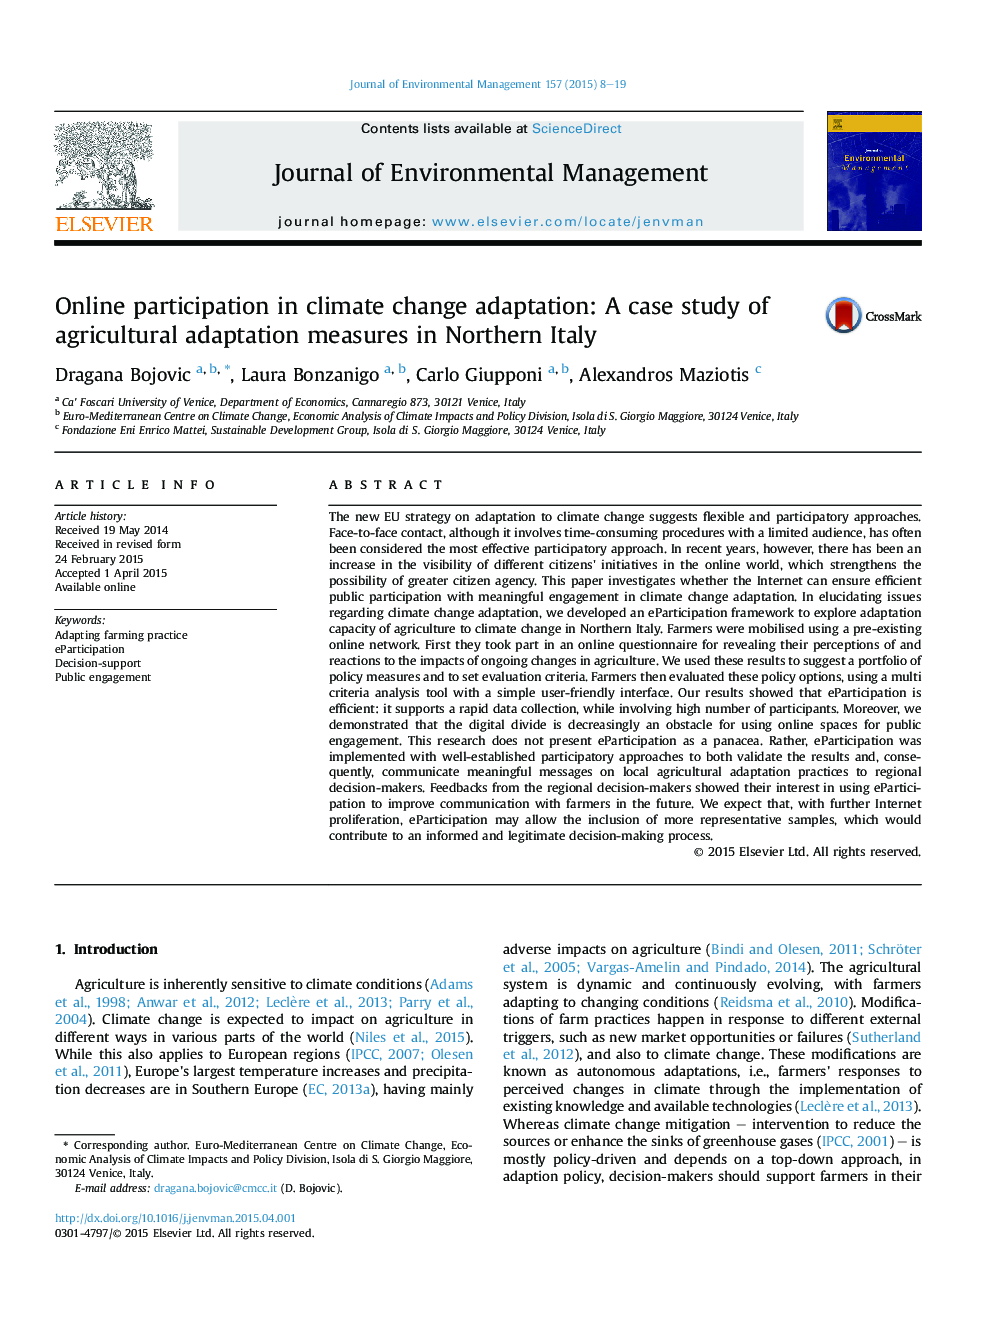 مشارکت آنلاین در انطباق تغییرات اقلیمی: مطالعه موردی اقدامات سازگاری کشاورزی در شمال ایتالیا 